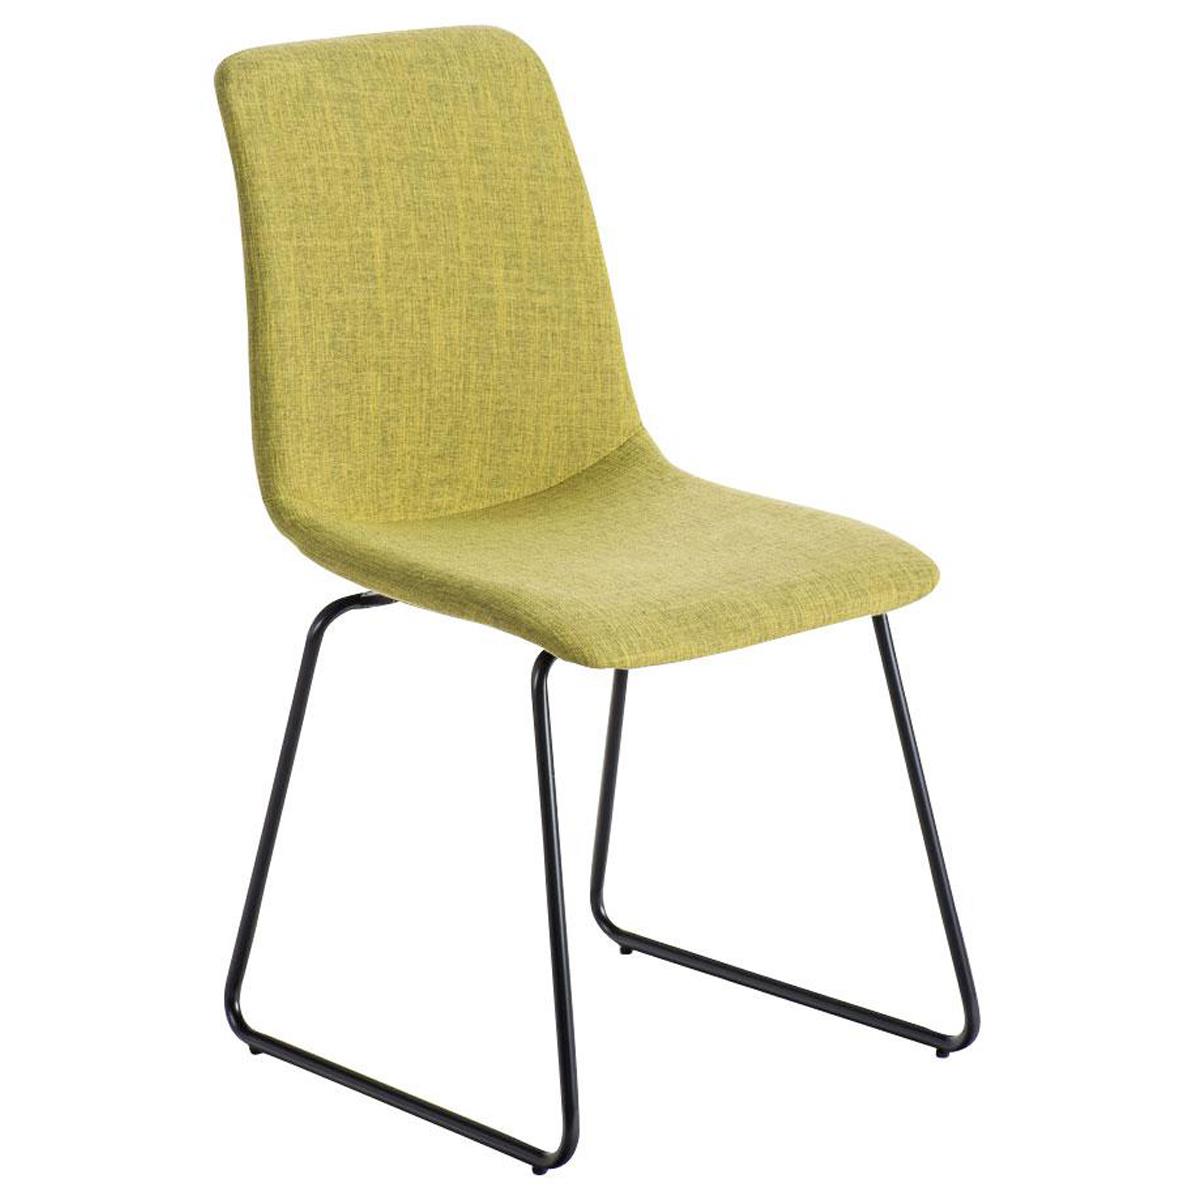 Chaise visiteur FRANCESC, Design Exclusif, Revêtement en Tissu, Vert